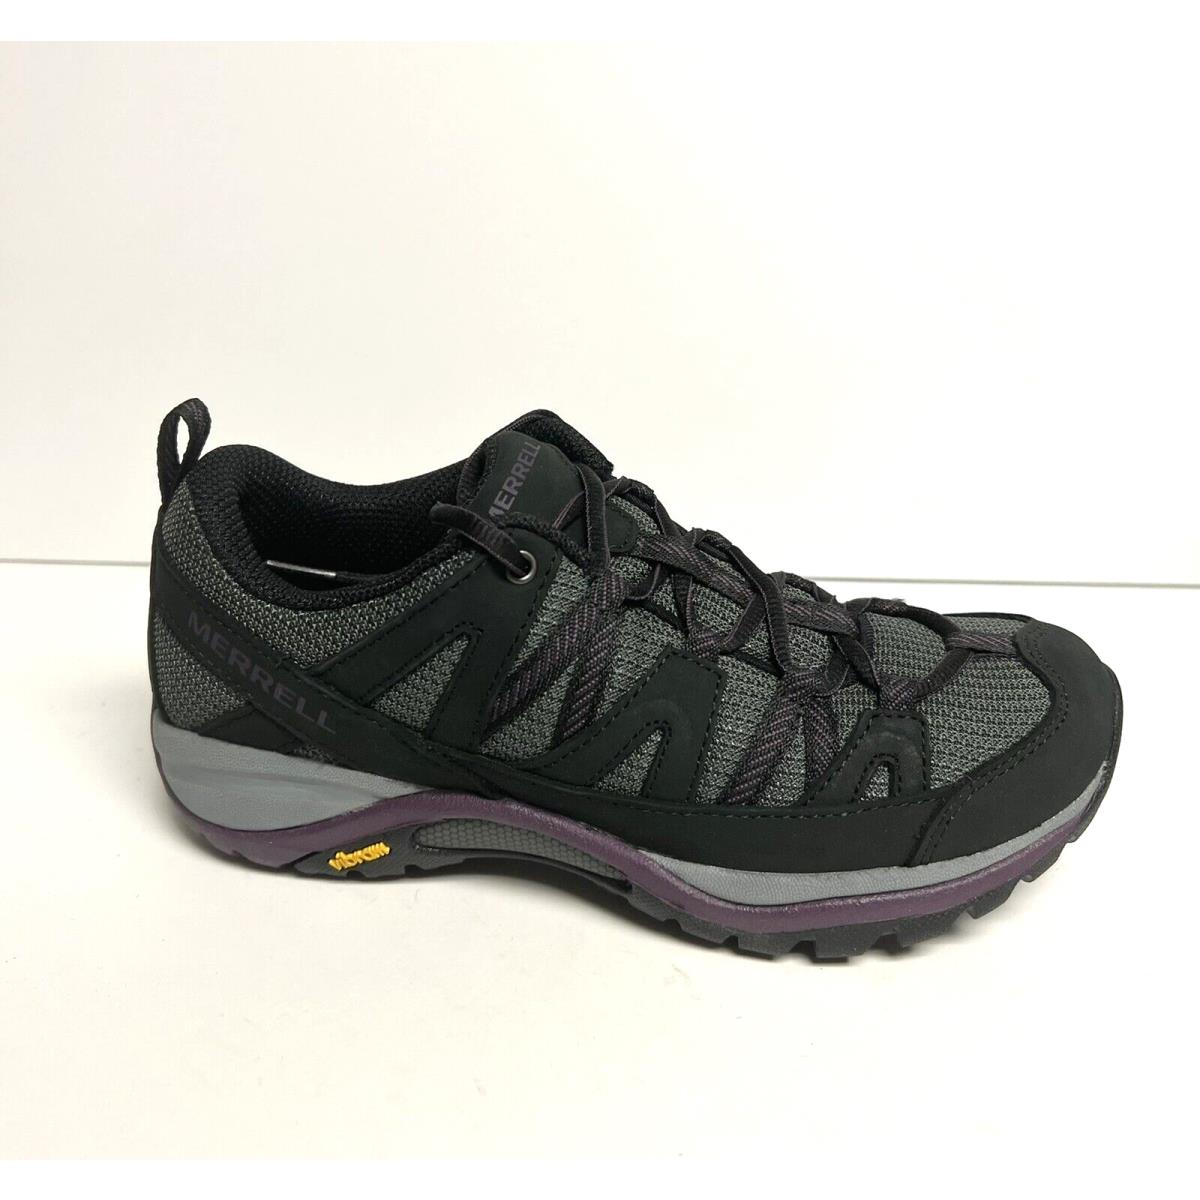 Merrell Womens Siren Sport 3 Waterproof Hiking Shoe Black Size 7 M